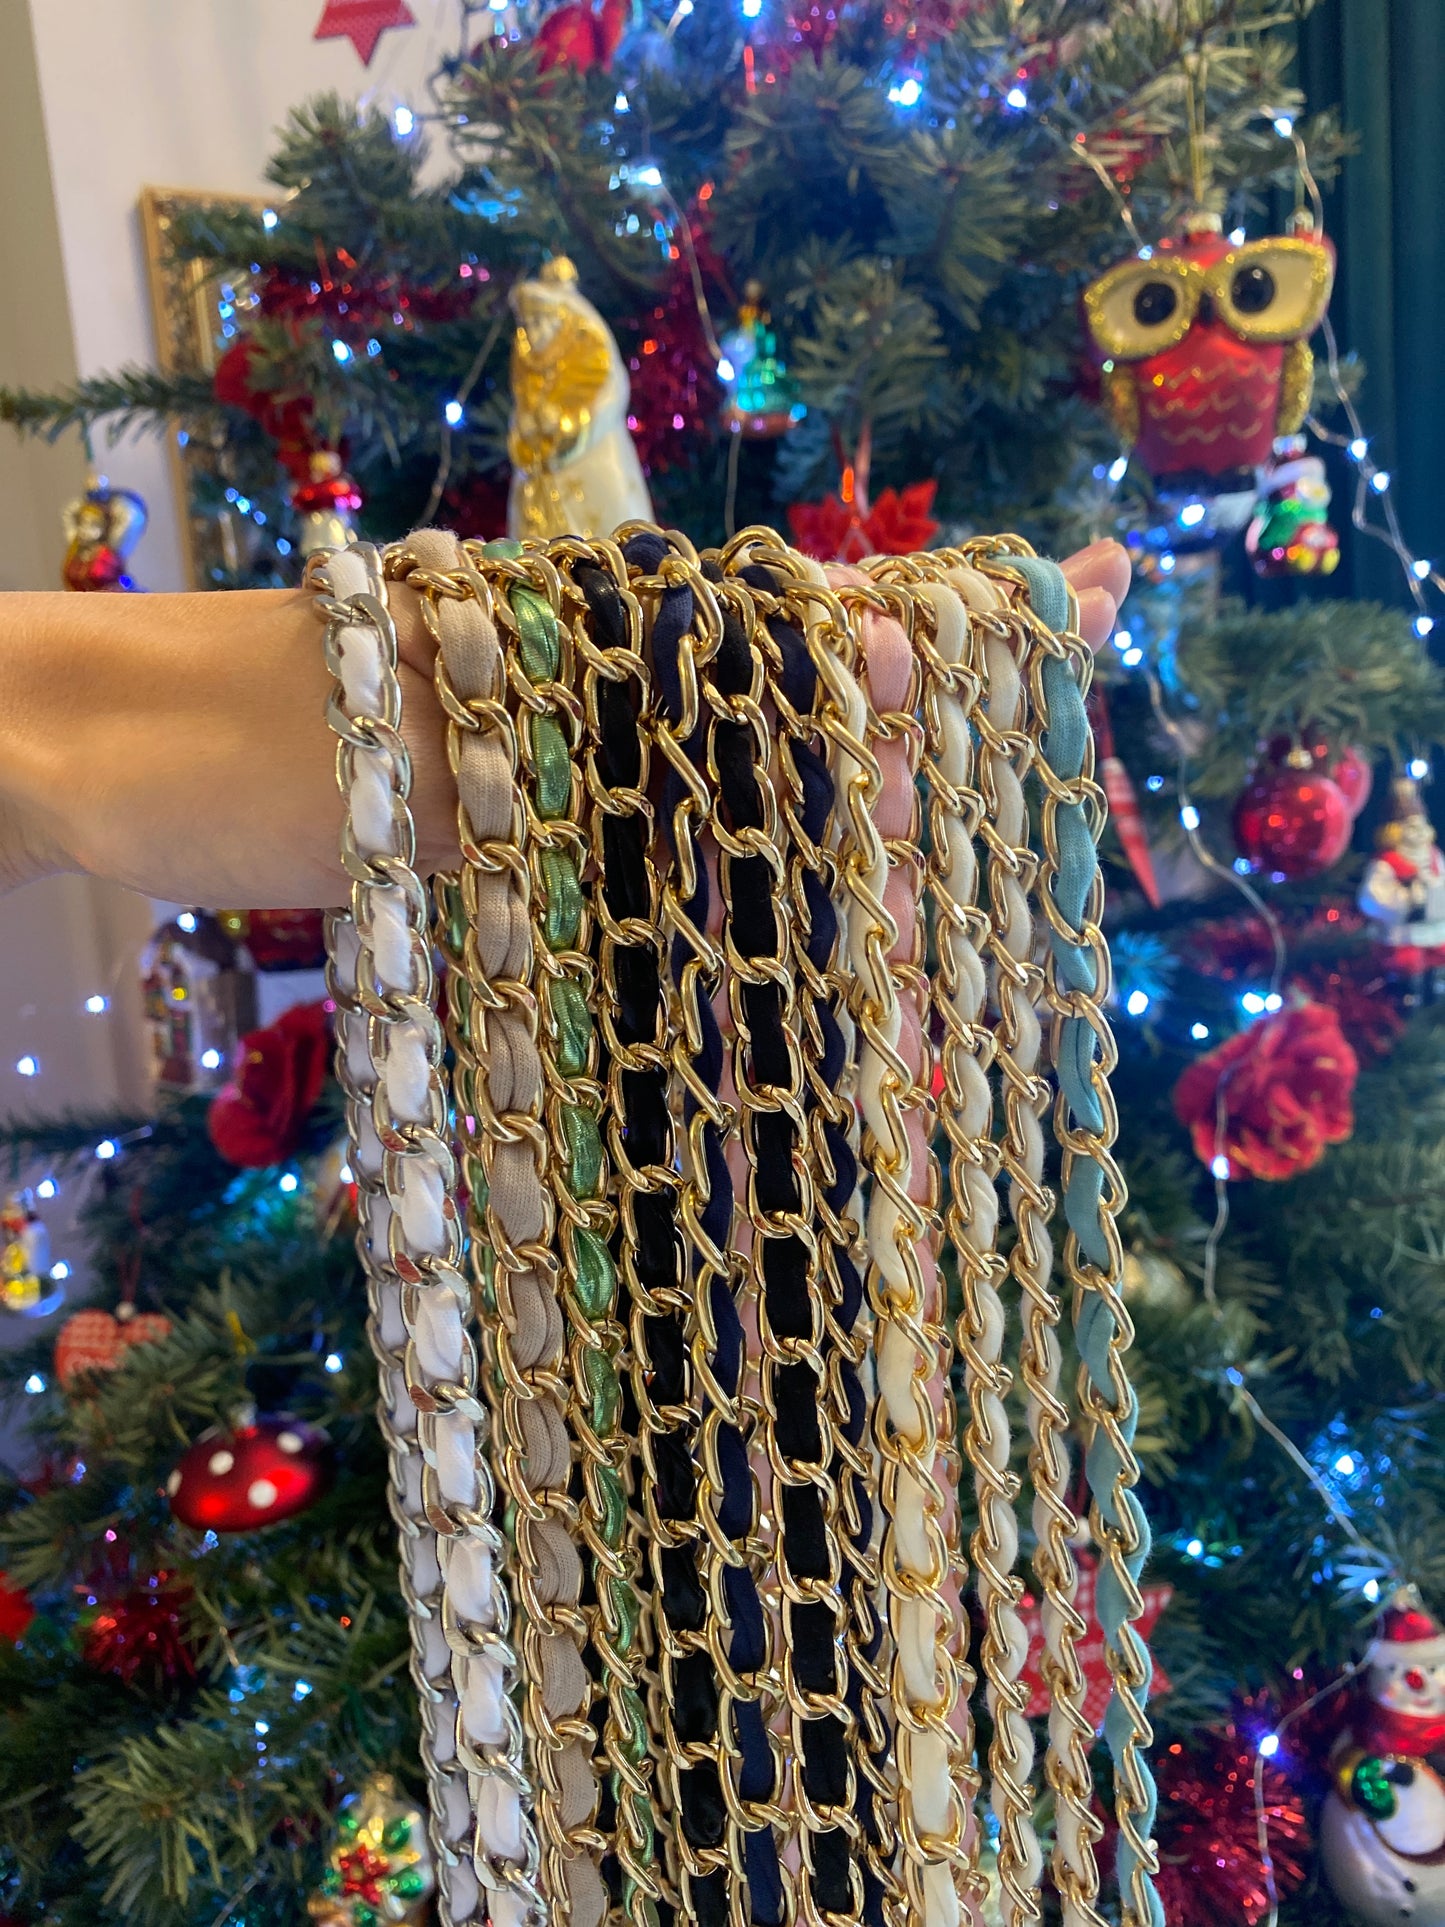 Chain with yarn